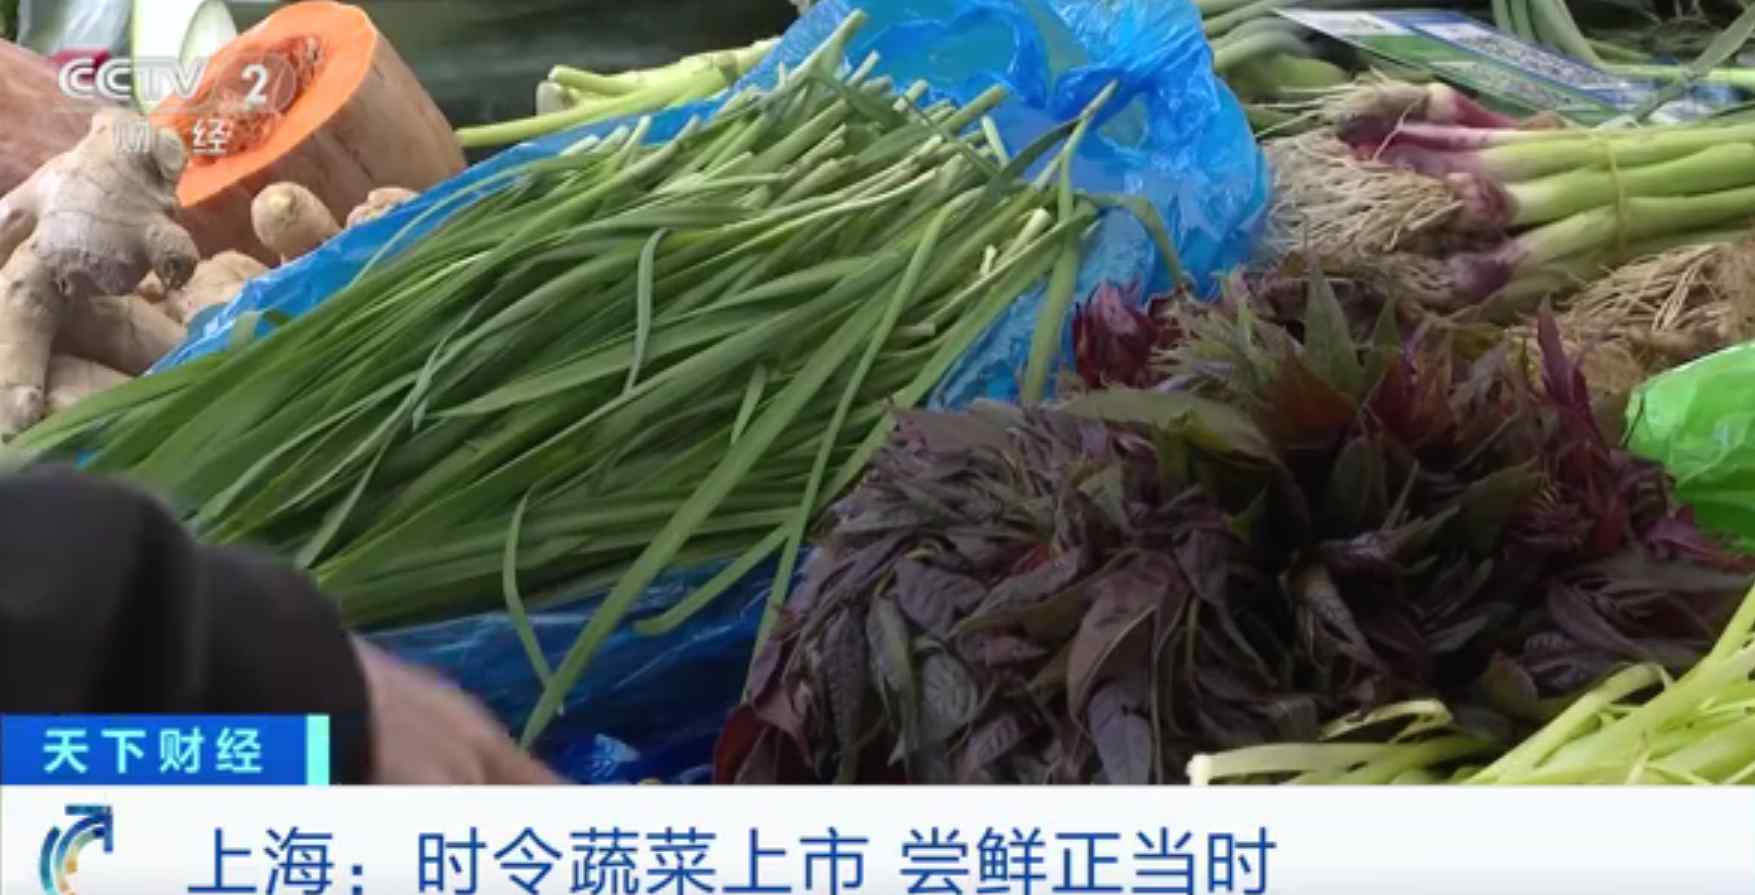 上海香椿卖到90元一斤 网友：老家院里有香椿树 不要钱